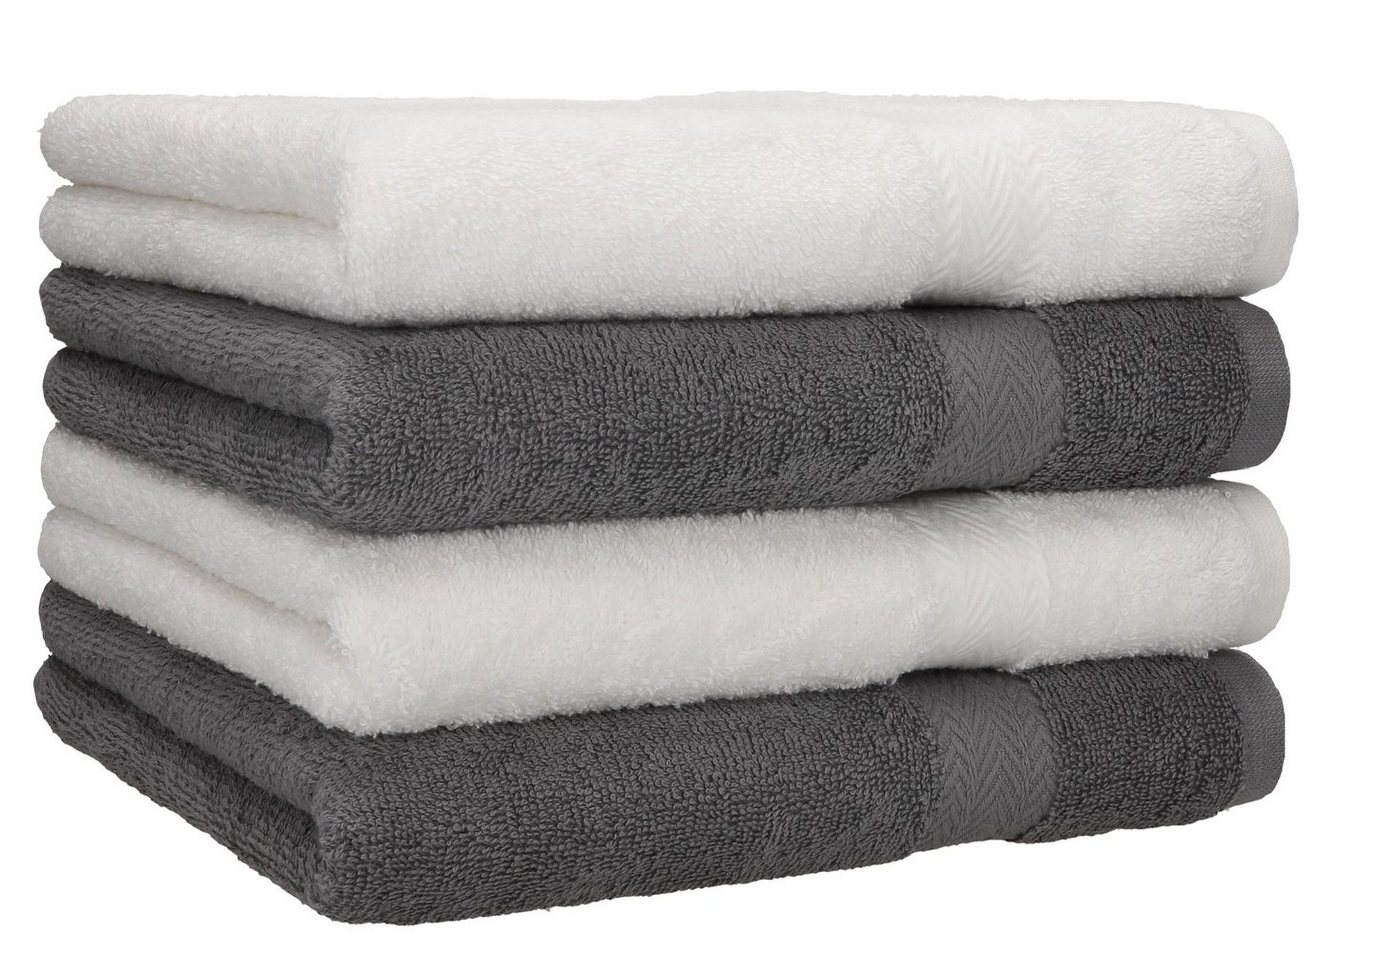 Betz Handtücher »4 Stück Handtücher Premium 100% Baumwolle 4 Handtücher Farbe weiß und anthrazit« von Betz